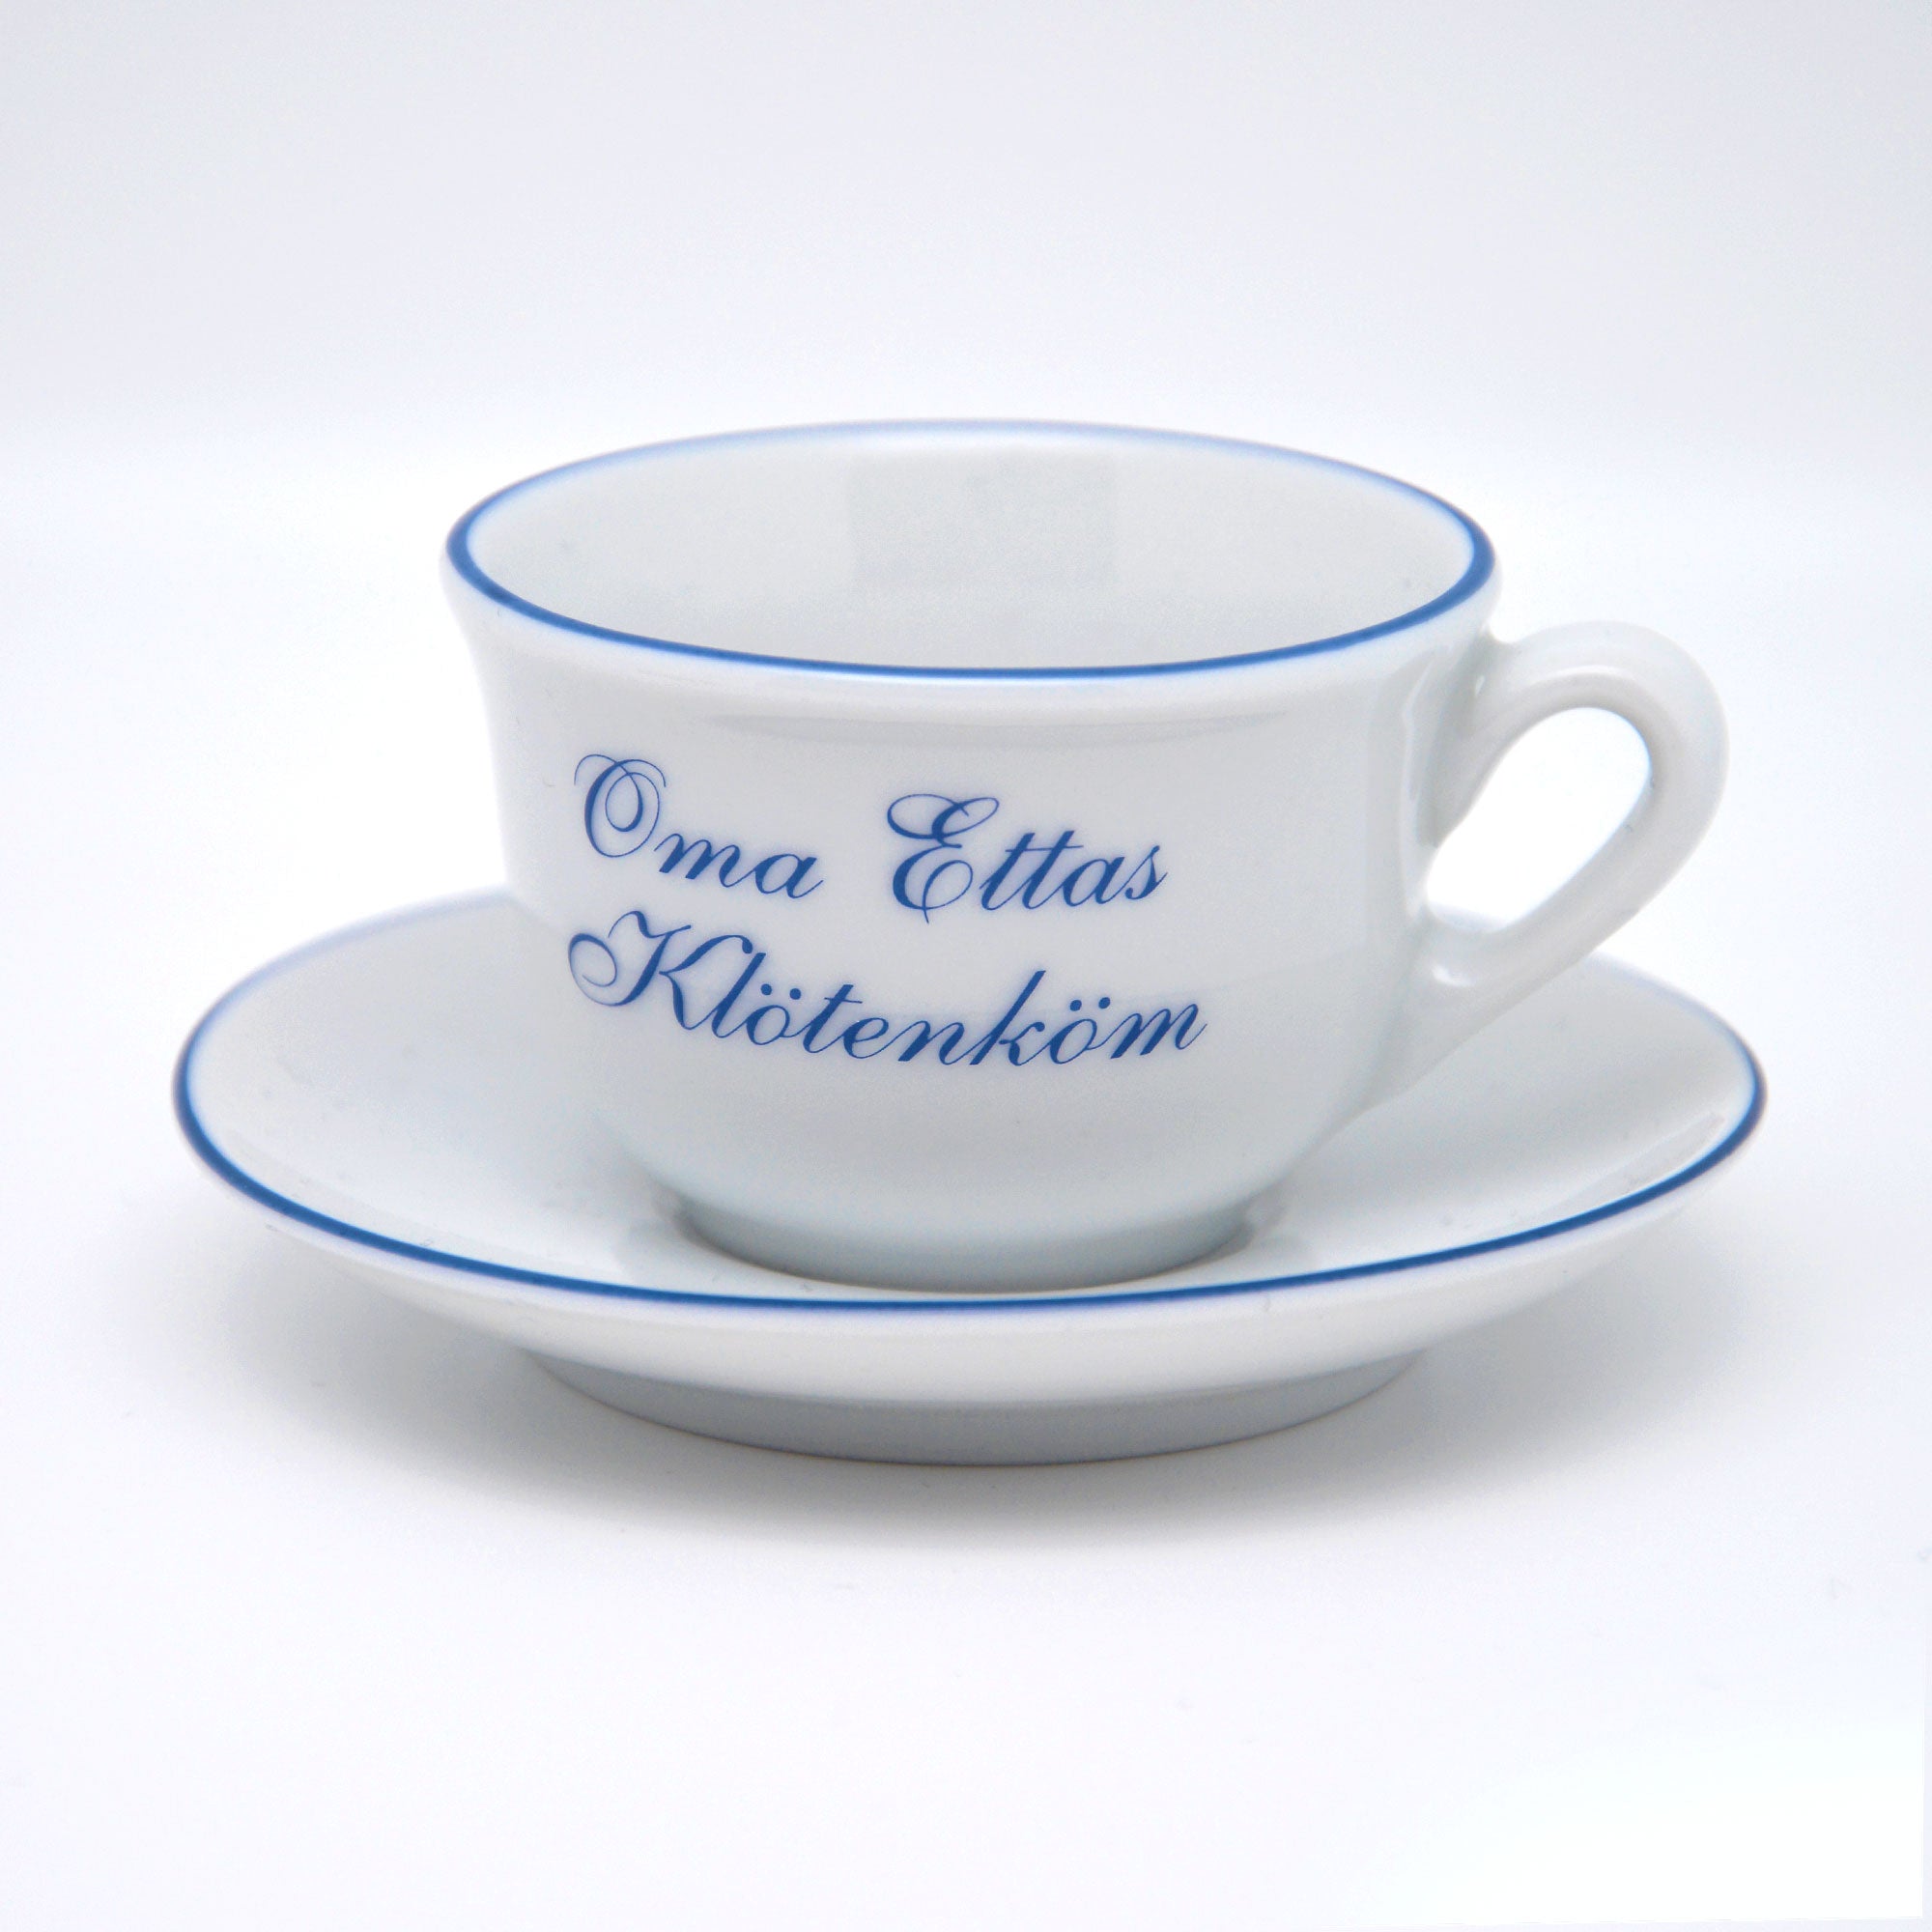 Selbstgemachte Oma Ettas Kloetenkoem Porzellan Tasse mit Untertasse fotografiert vor weißem Hintergrund